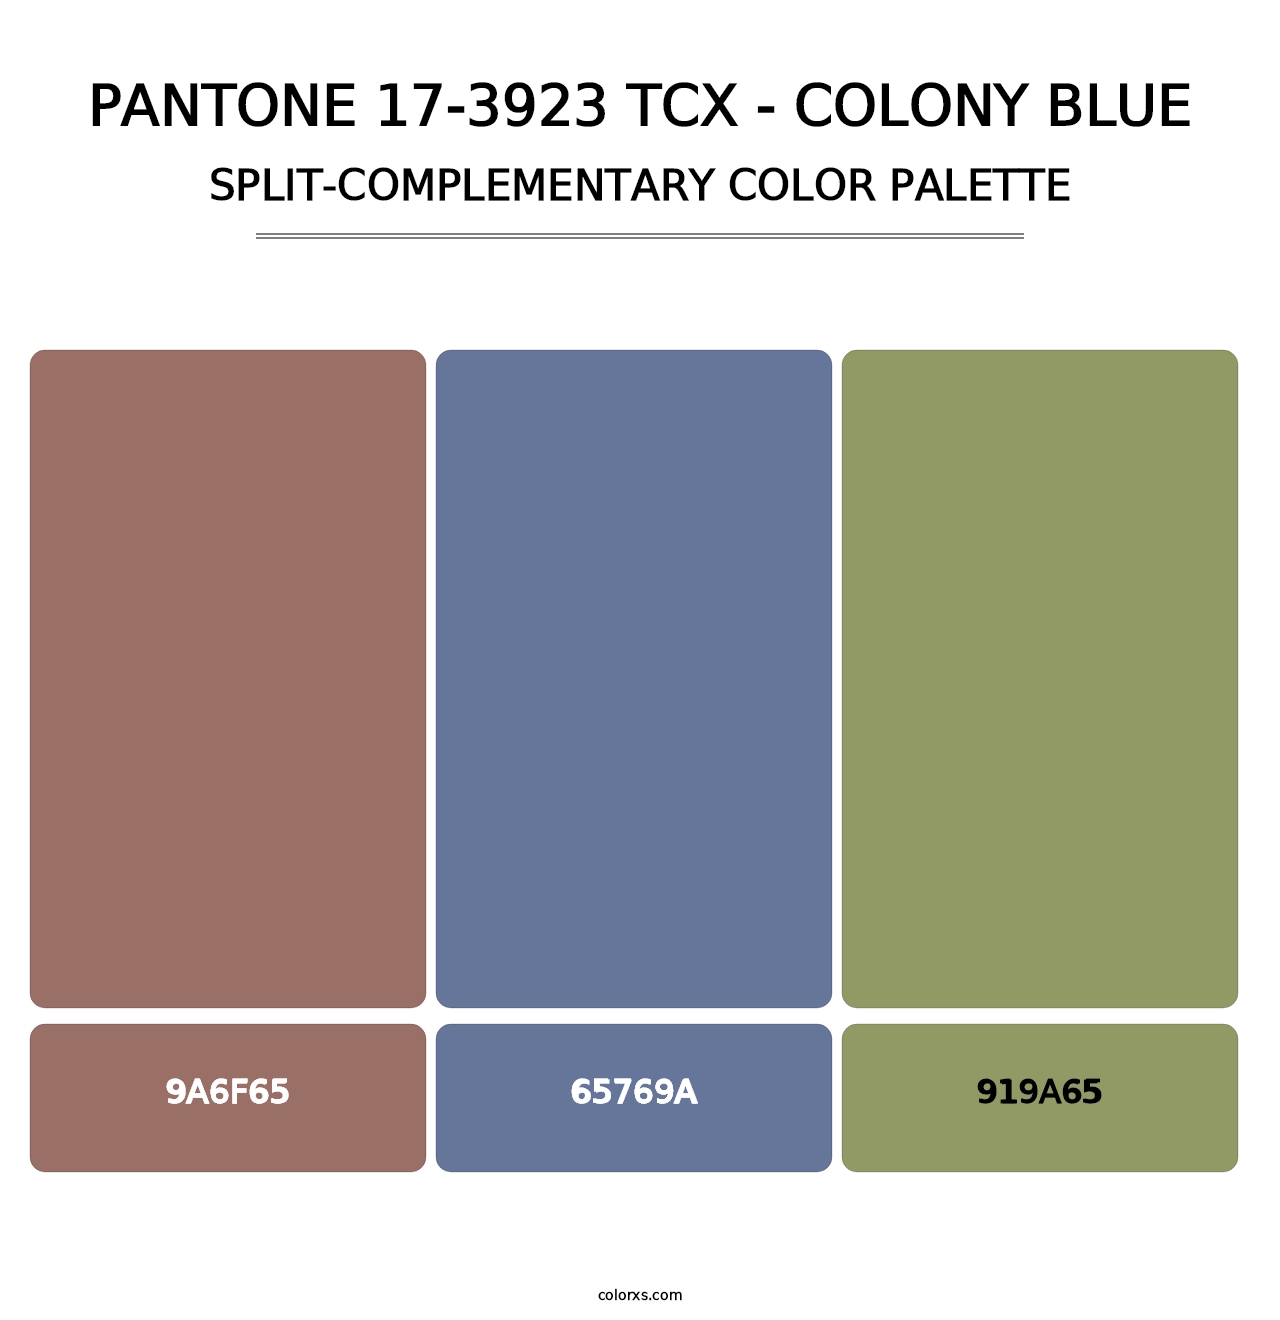 PANTONE 17-3923 TCX - Colony Blue - Split-Complementary Color Palette